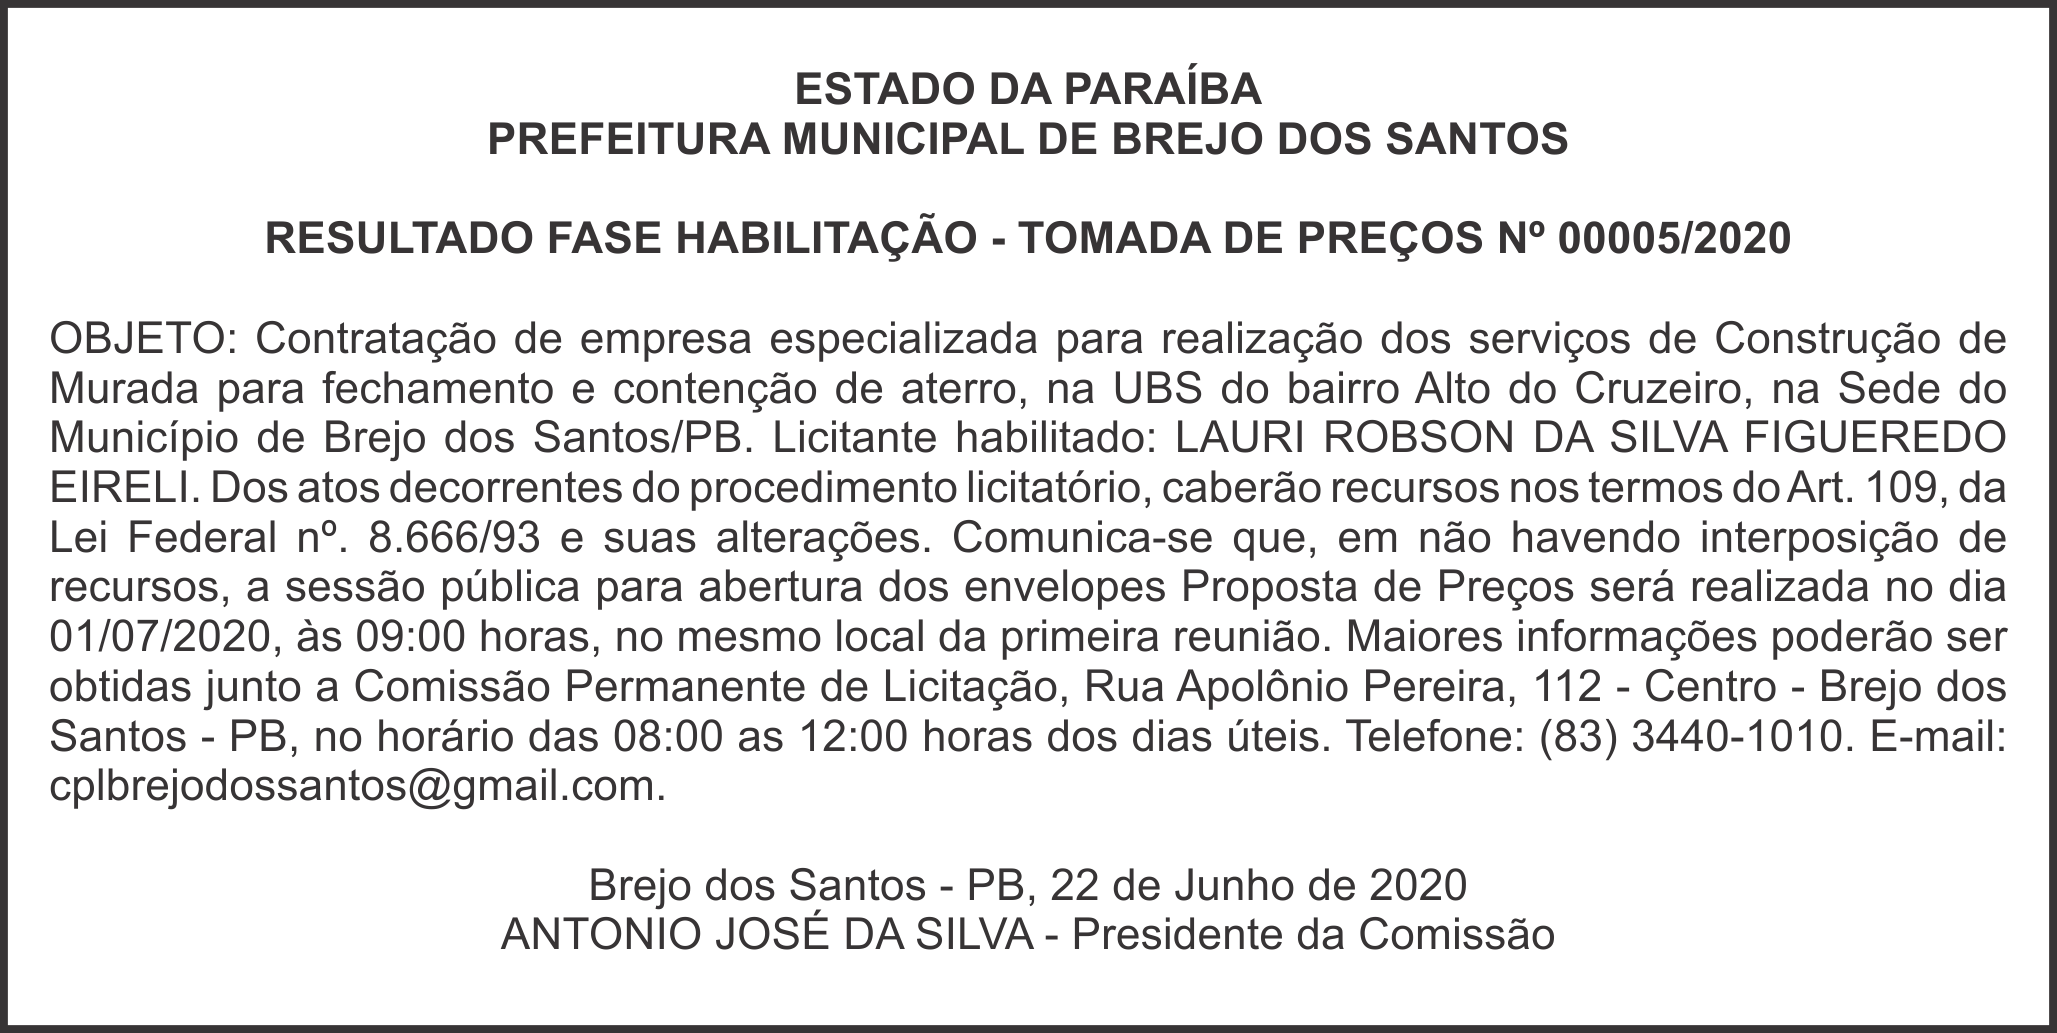 PREFEITURA MUNICIPAL DE BREJO DOS SANTOS – RESULTADO FASE HABILITAÇÃO – TOMADA DE PREÇOS Nº 00005/2020